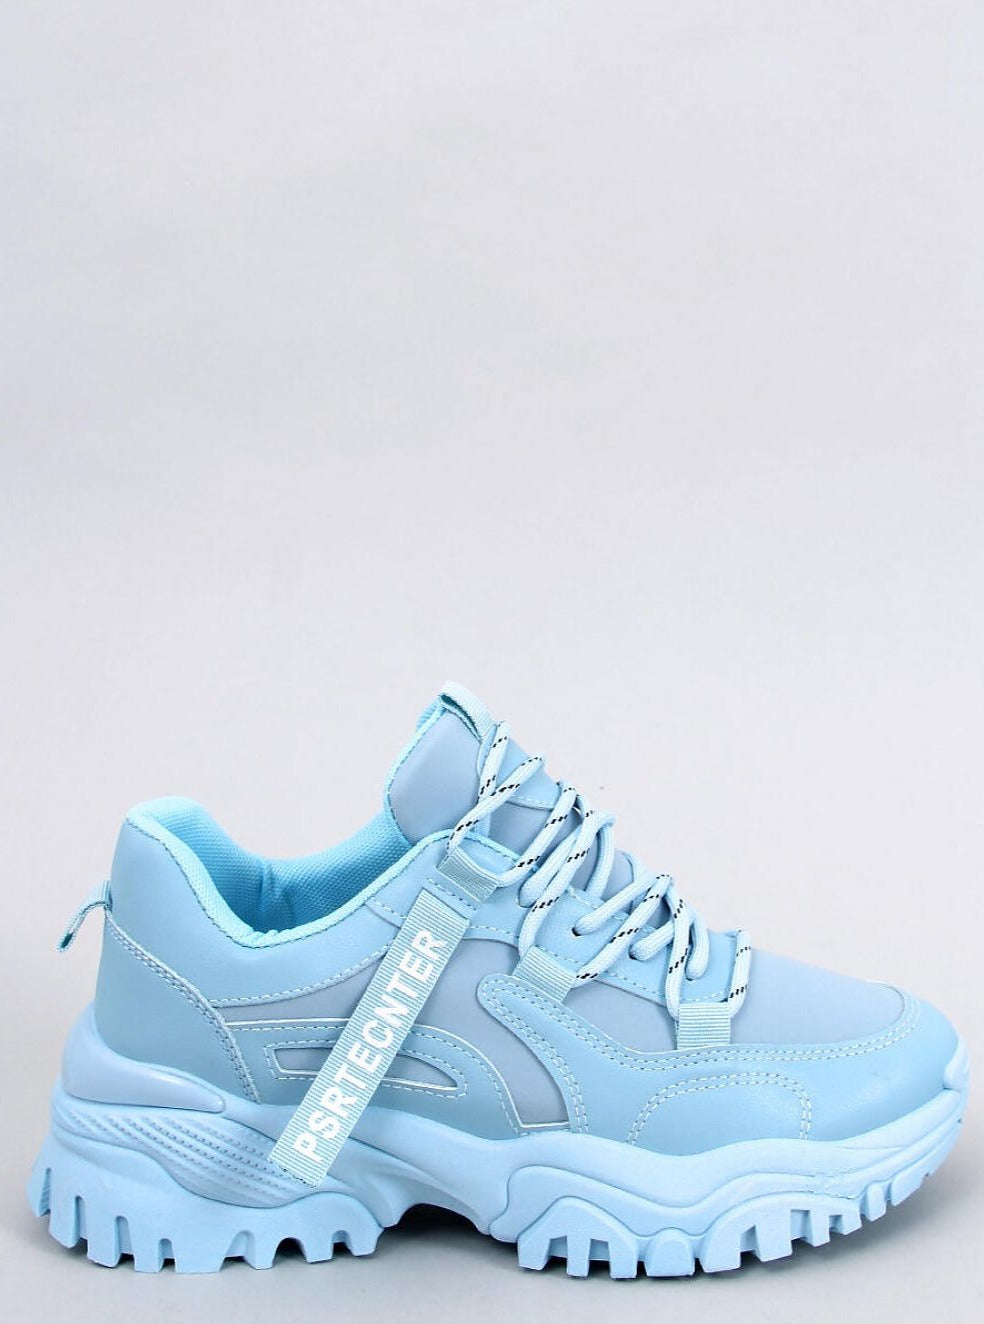 TEEK - Light Blue Laced Sport Sneakers SHOES TEEK MH 5.5  